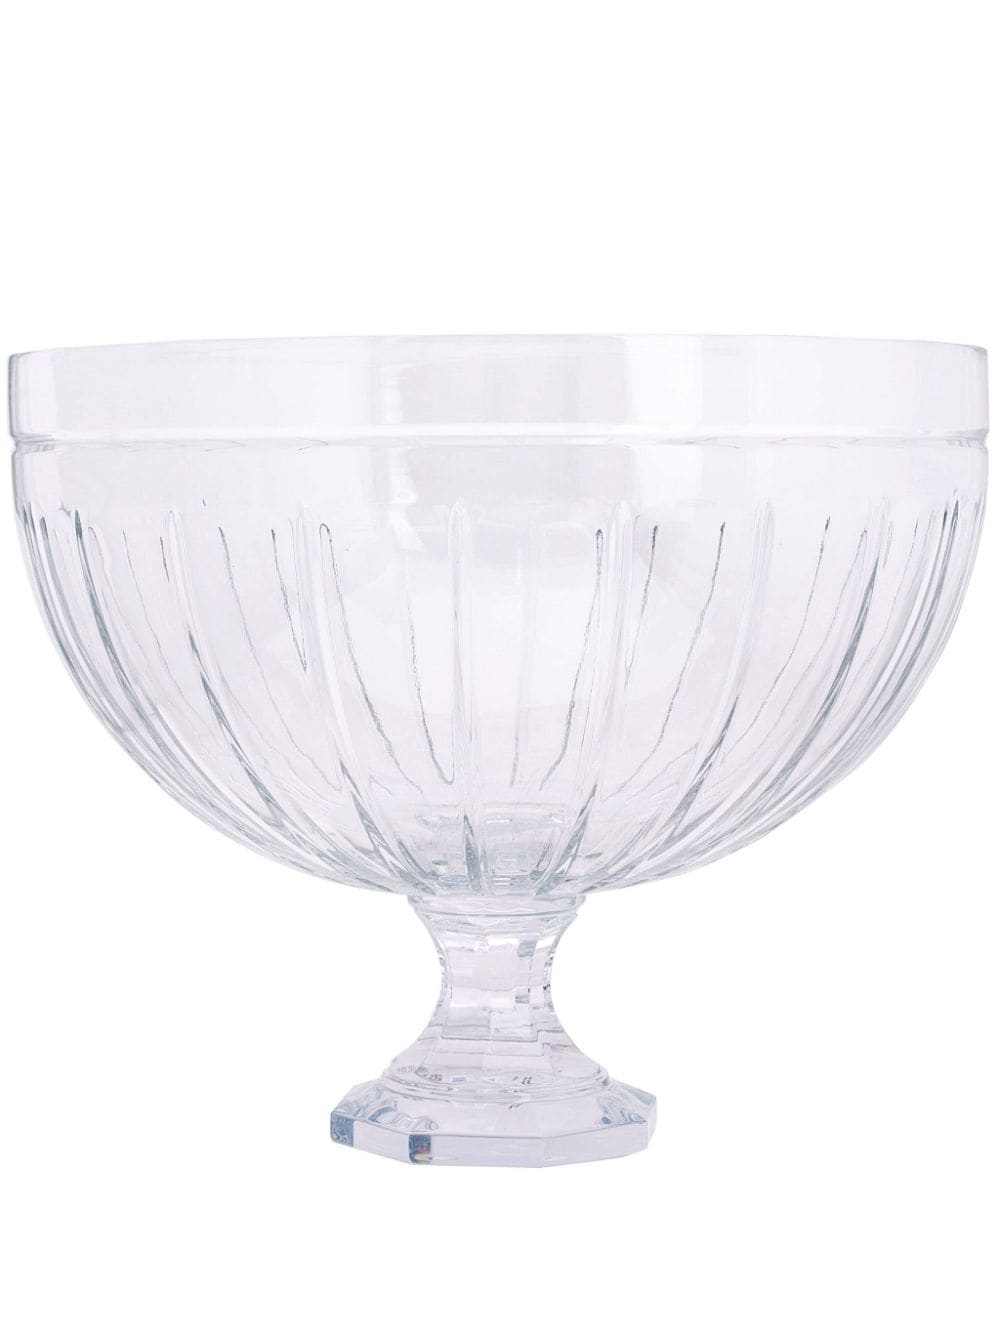 Ralph Lauren Home Coraline crystal centrepiece bowl - Neutrals von Ralph Lauren Home